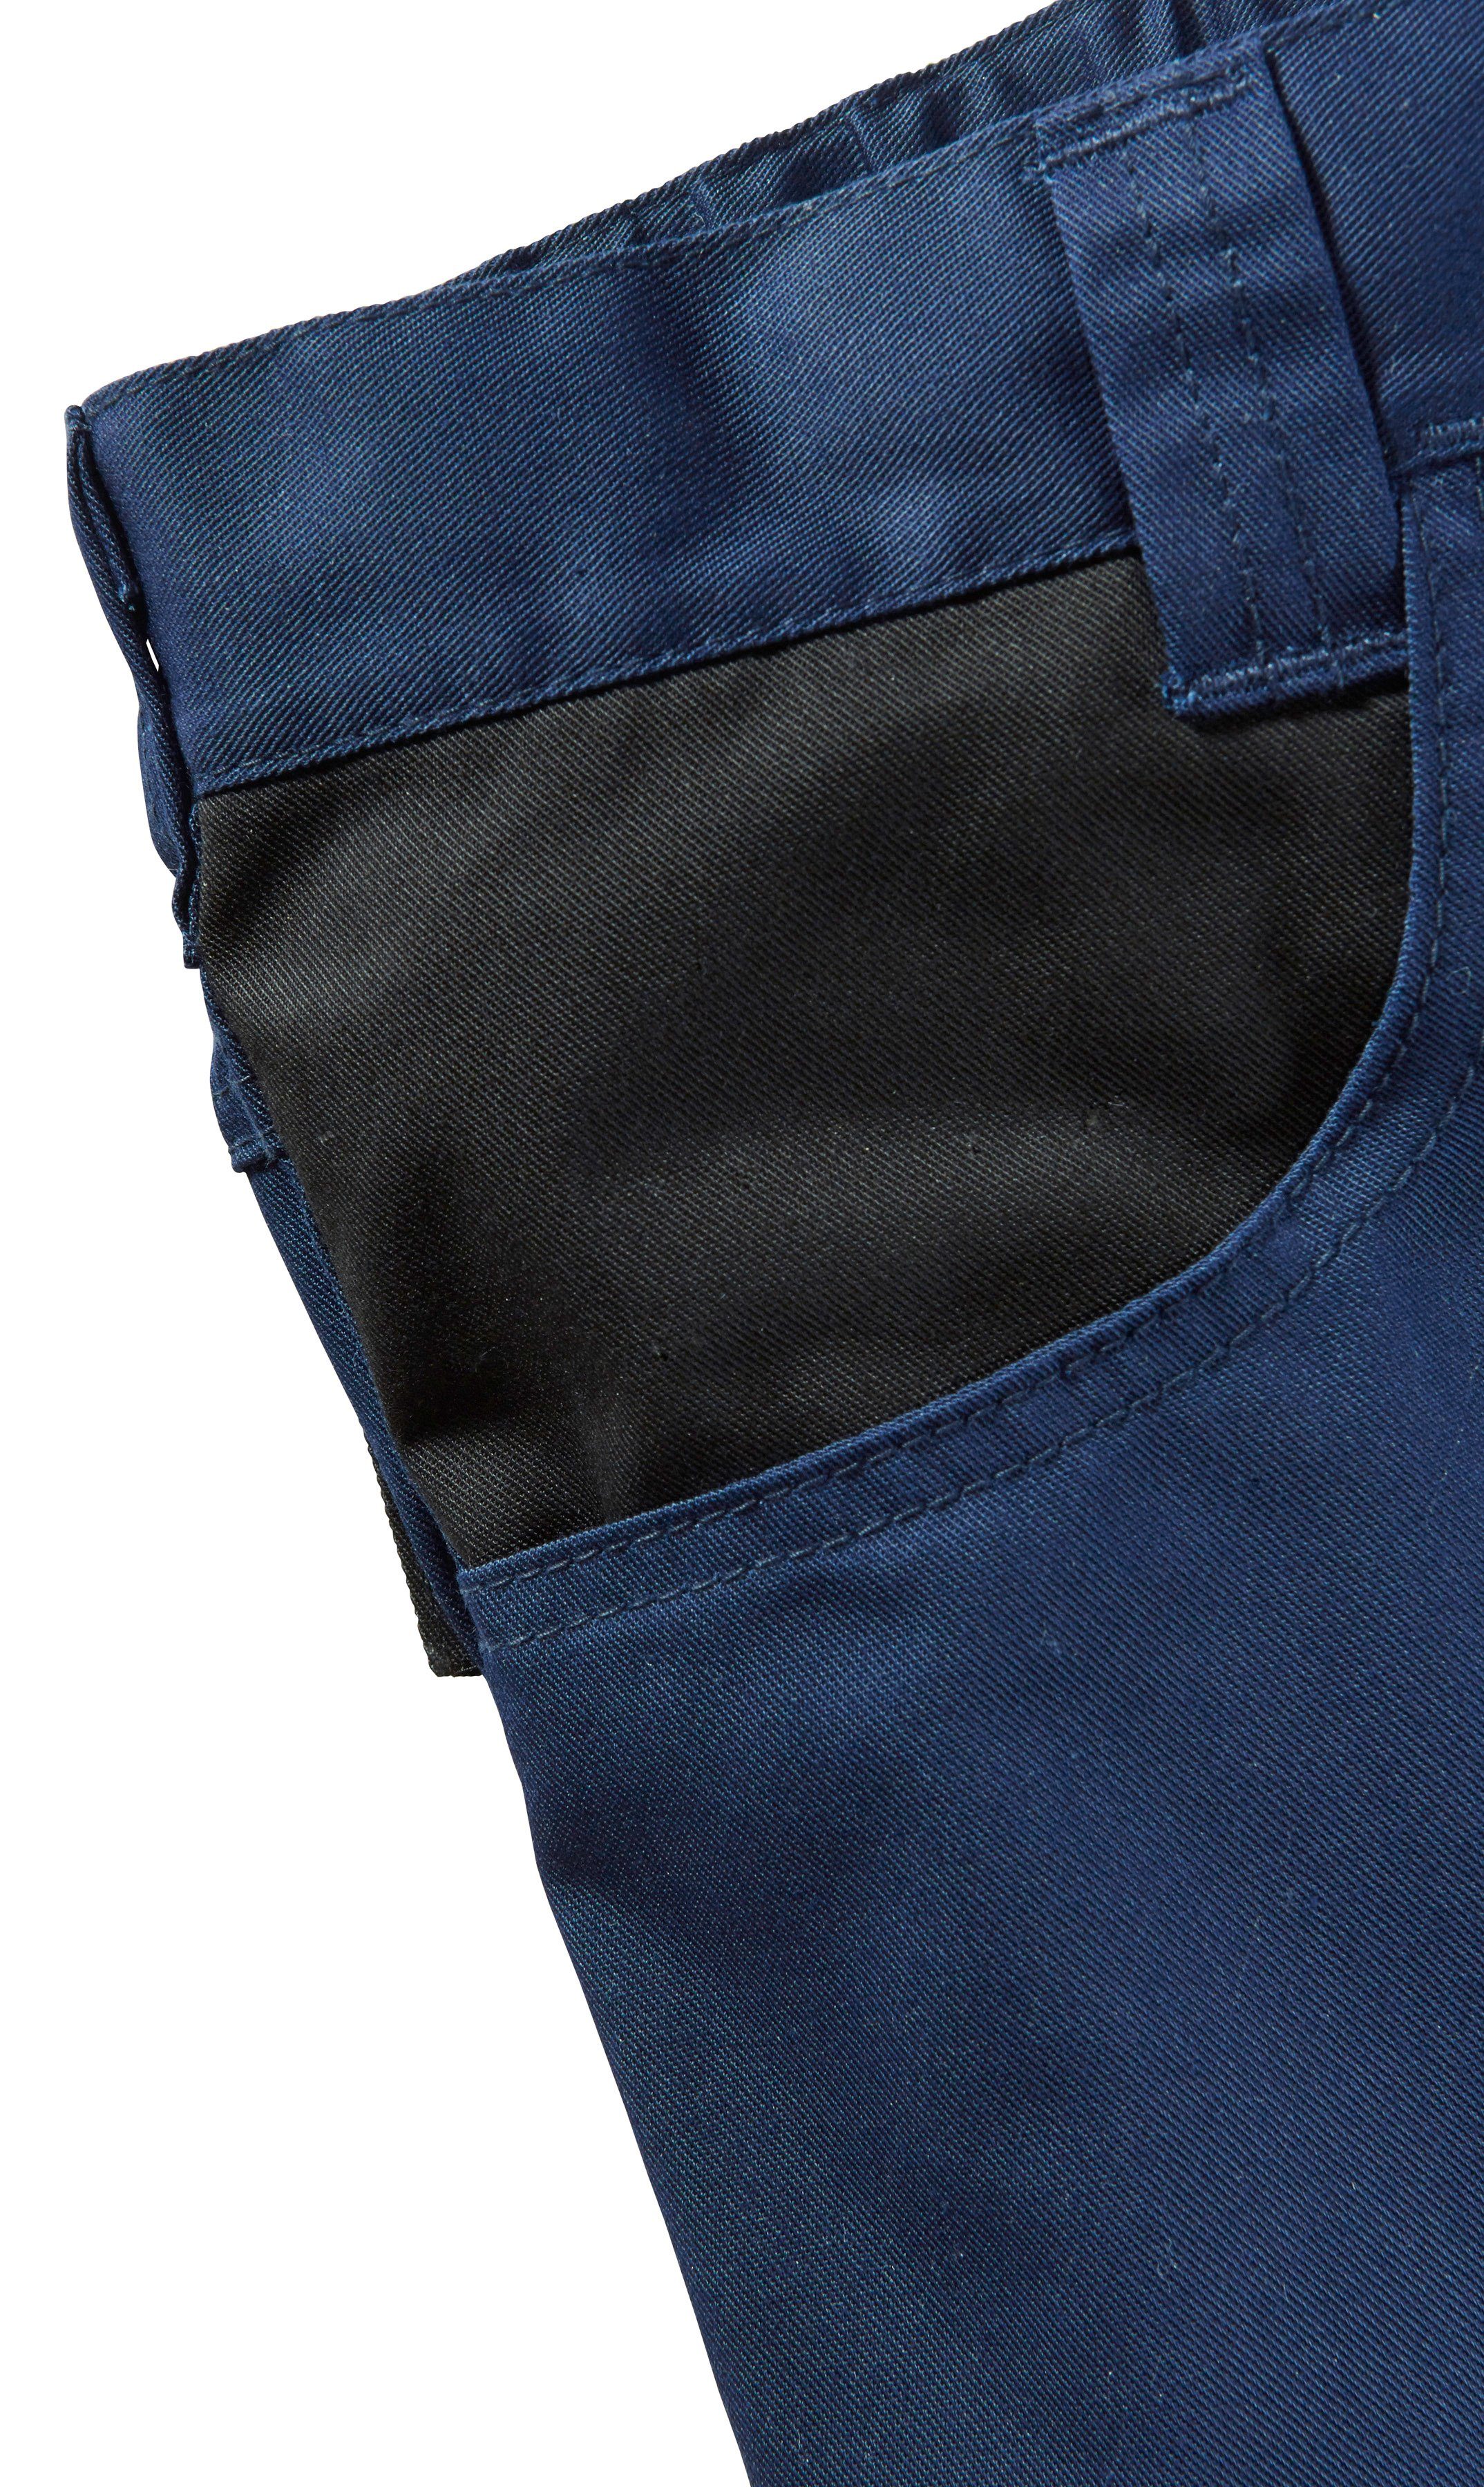 safety& more Arbeitsshorts dunkelblau-schwarz mar Reflexeinsatz Pull mit